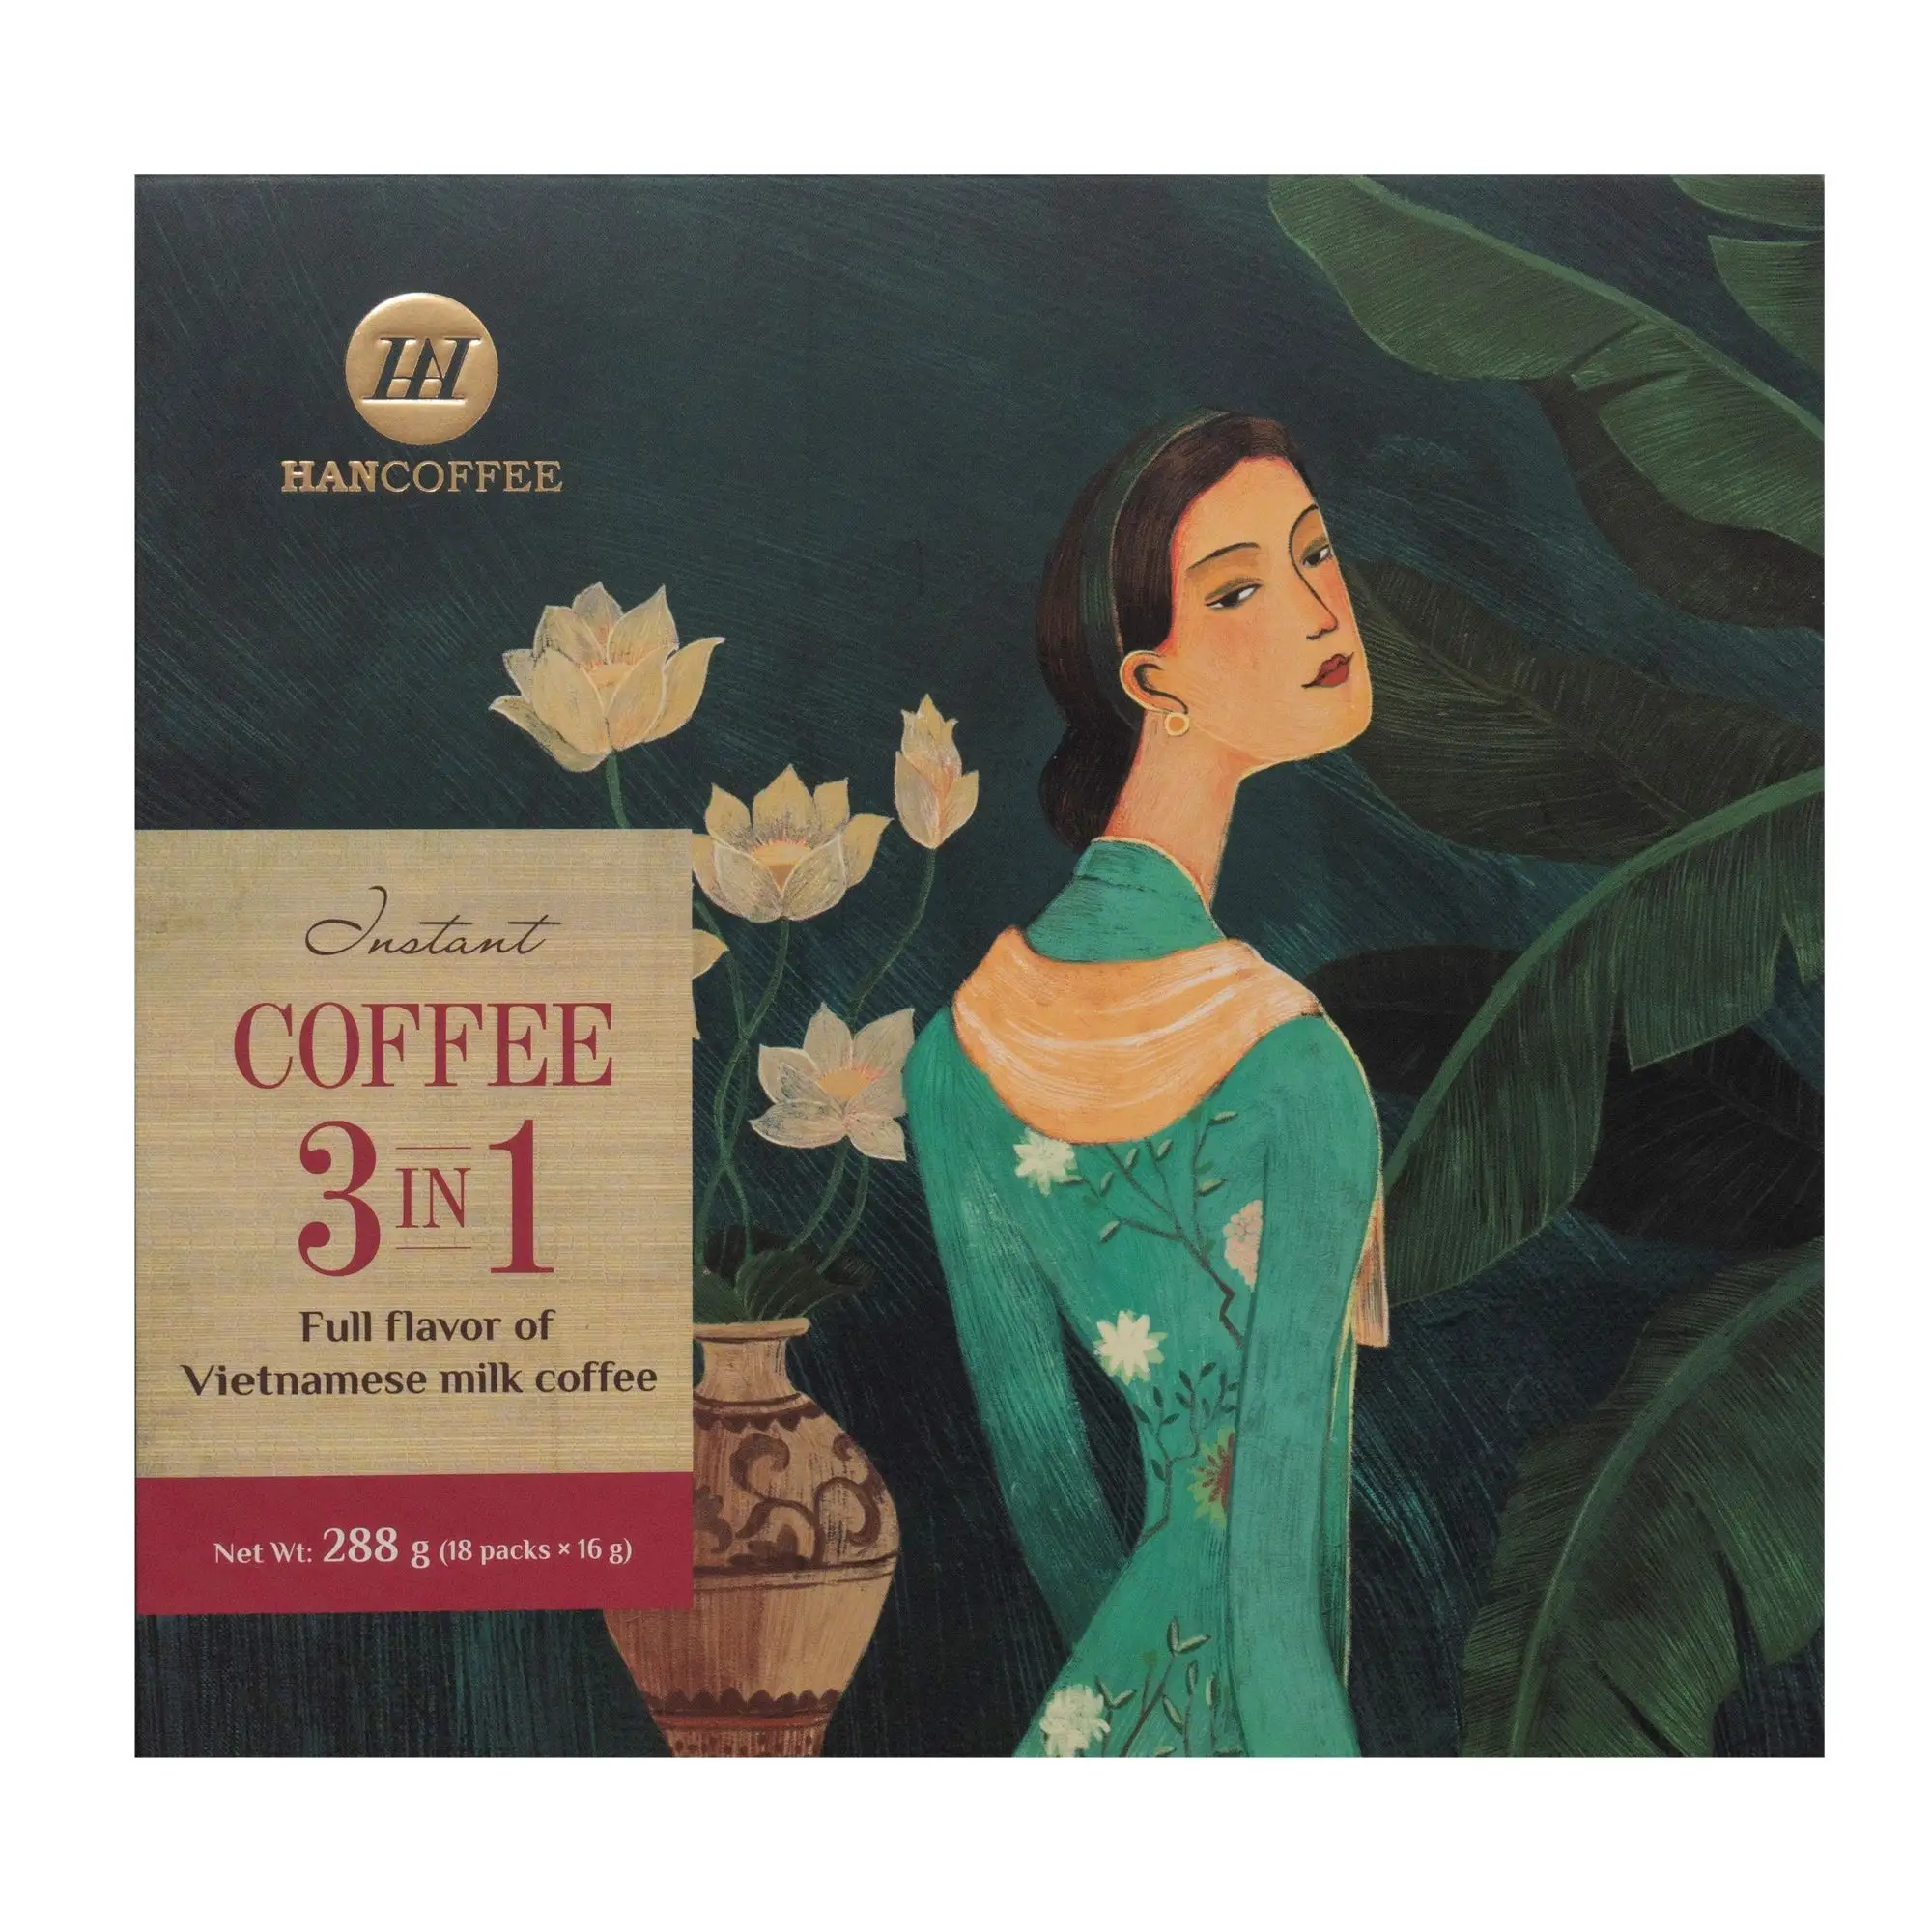 Вьетнам высокое качество лиофилизированный 3 в 1 растворимый кофе производство оригинального оборудования эксклюзивный растворимый кофе лучшего качества